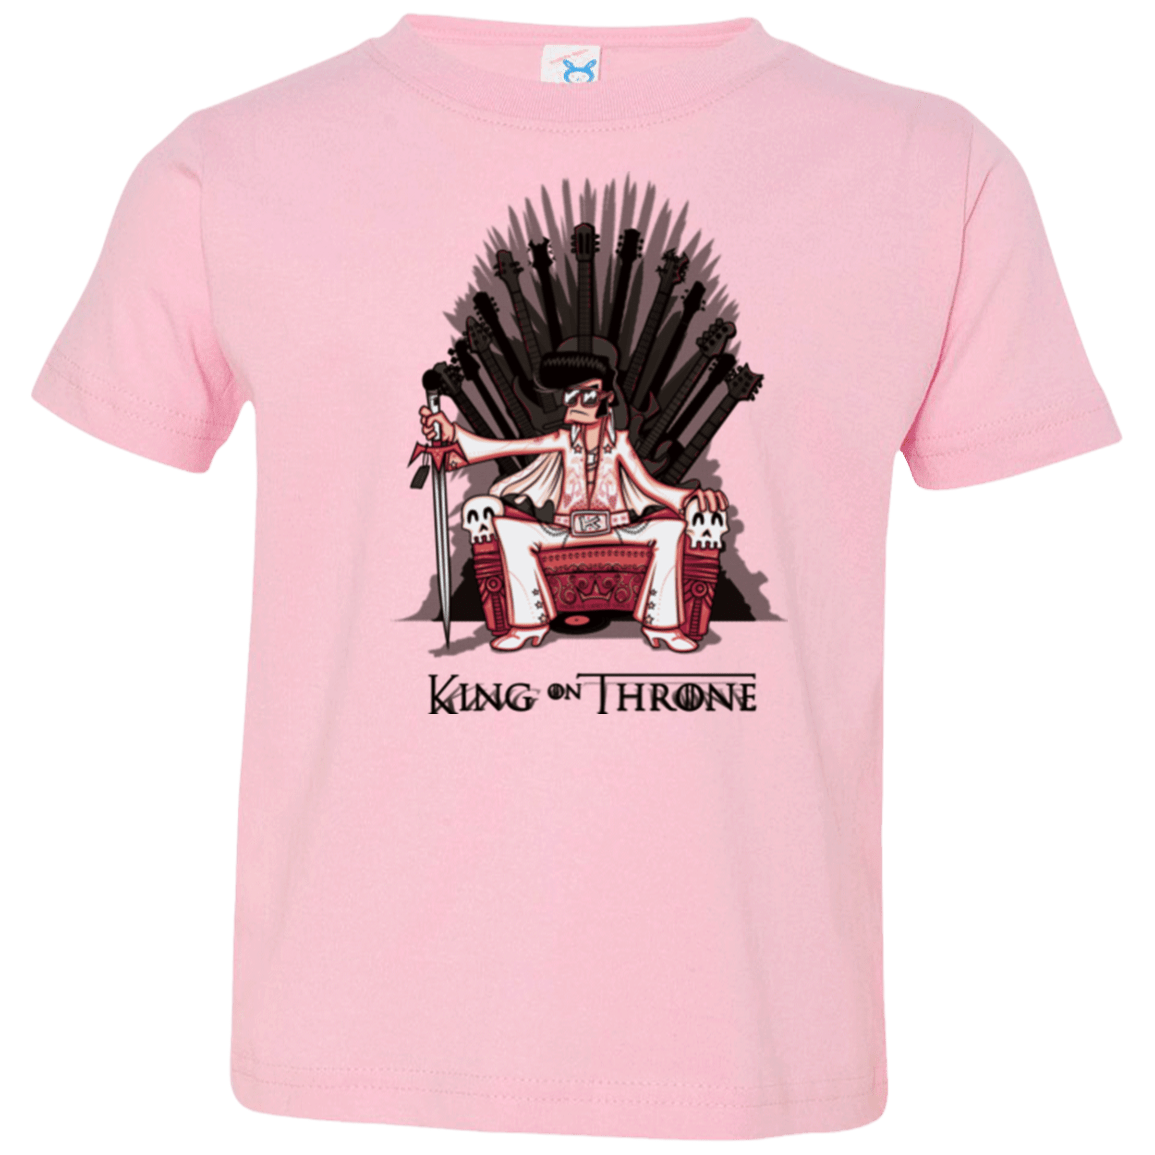 King on Throne Toddler Premium T-Shirt